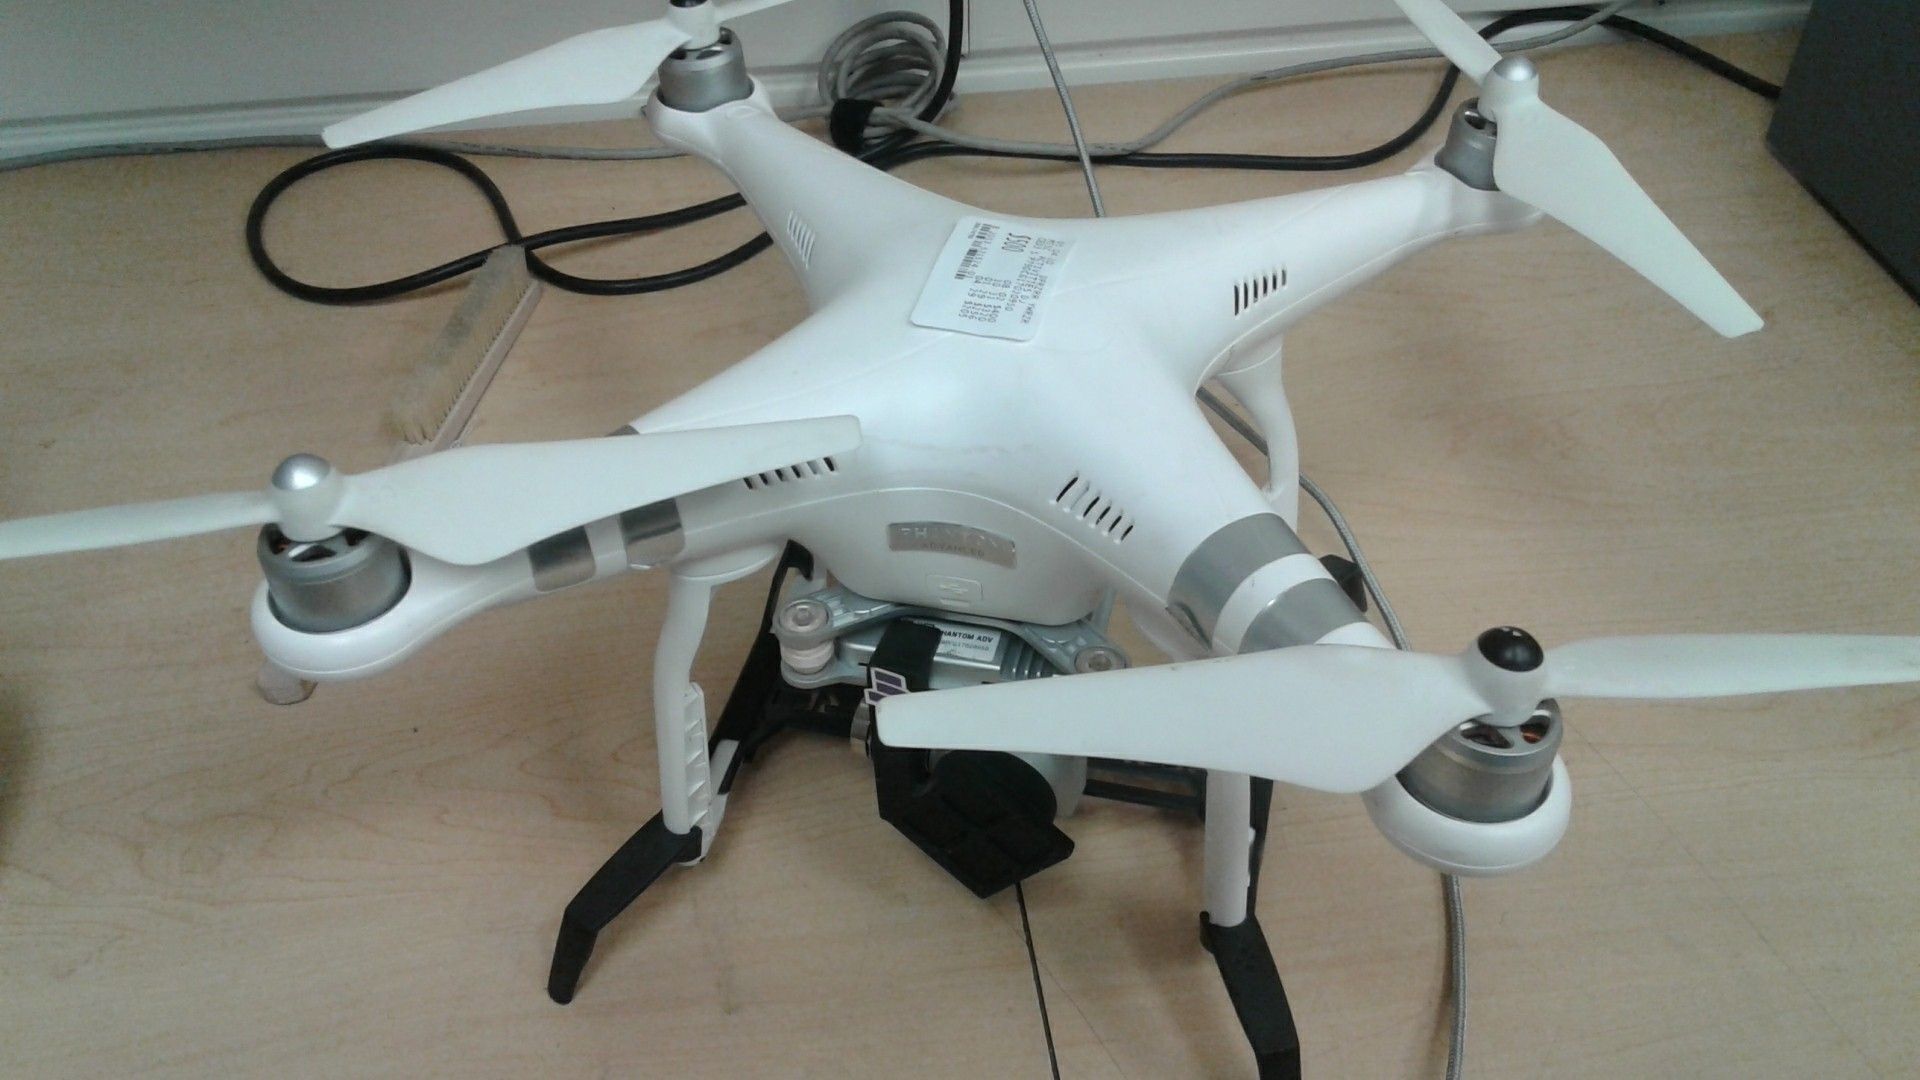 DJI phantom 3 drone